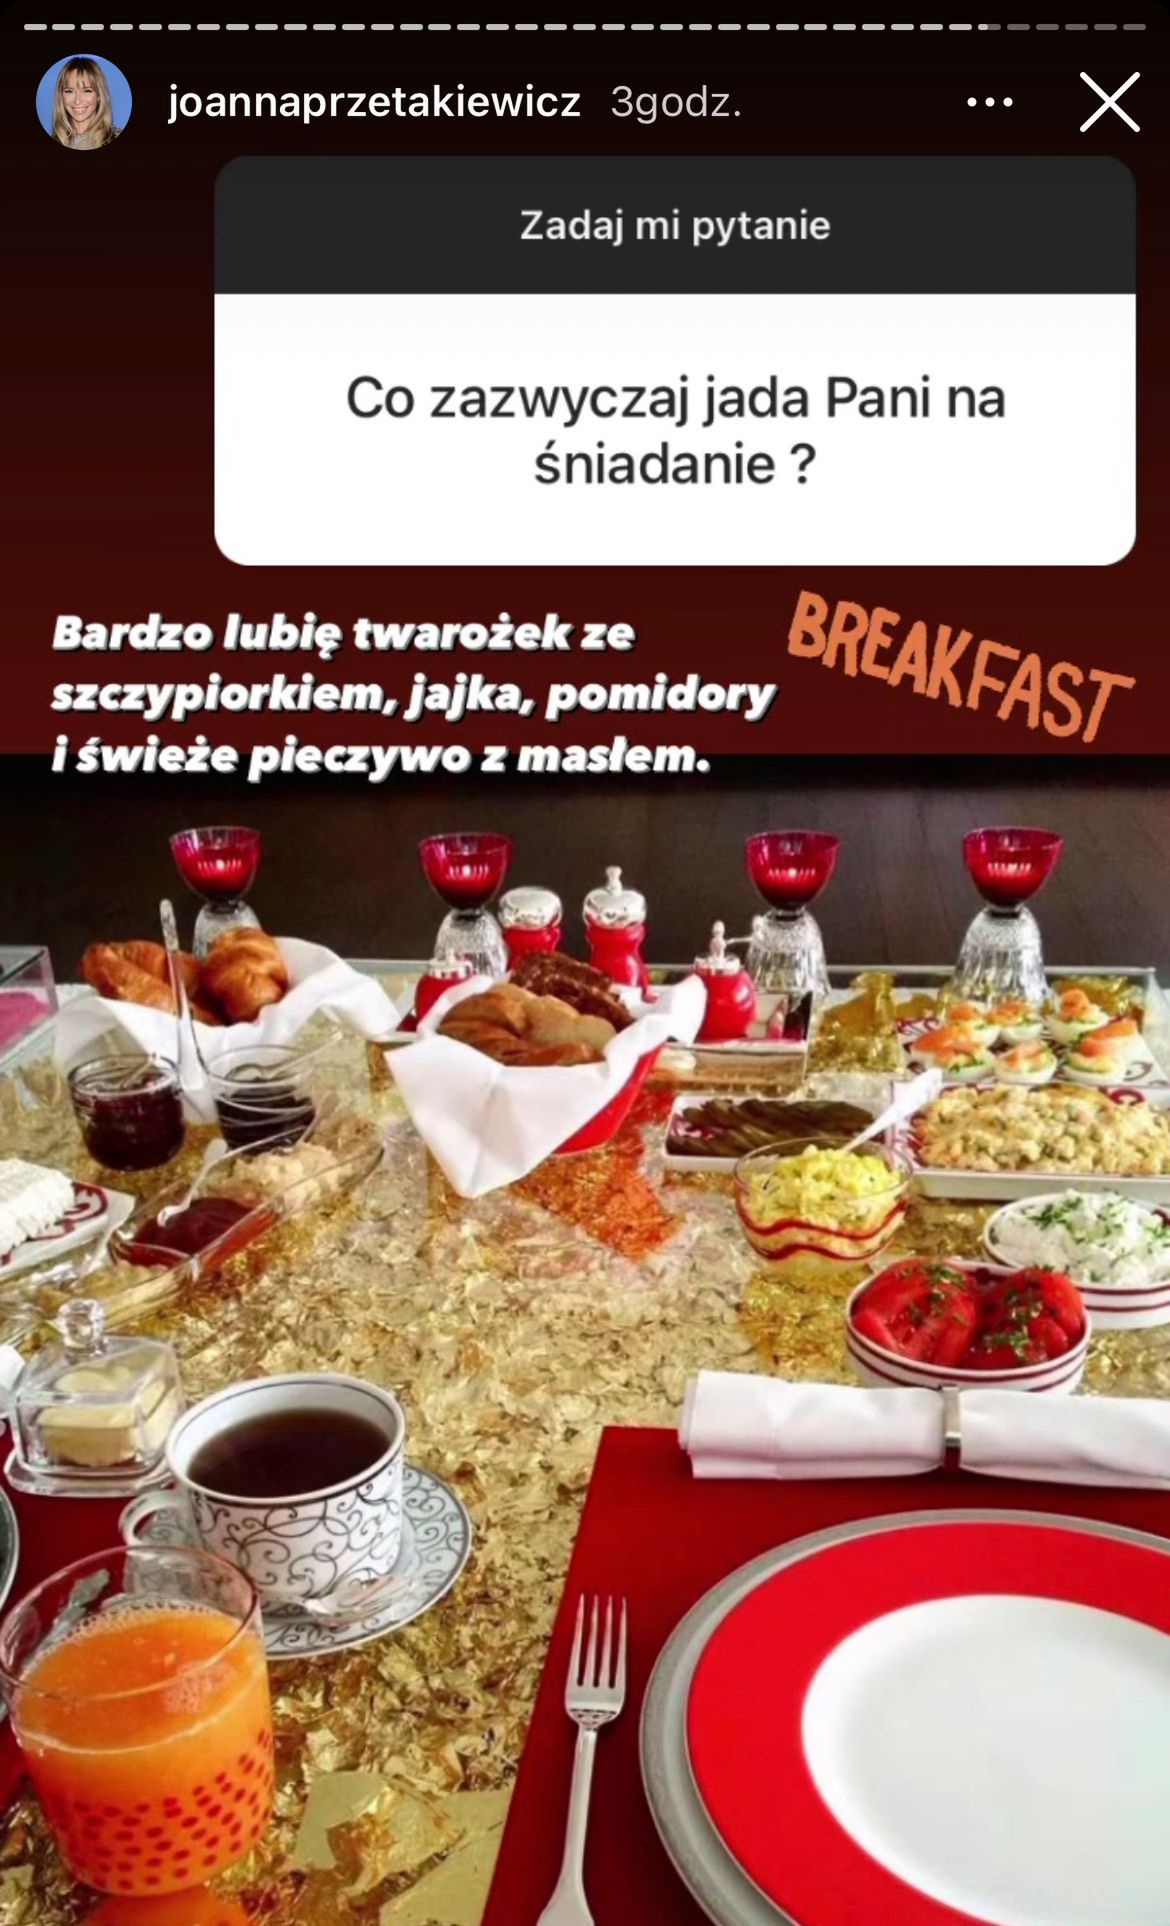 Joanna Przetakiewicz zdradziła, co je na śniadanie